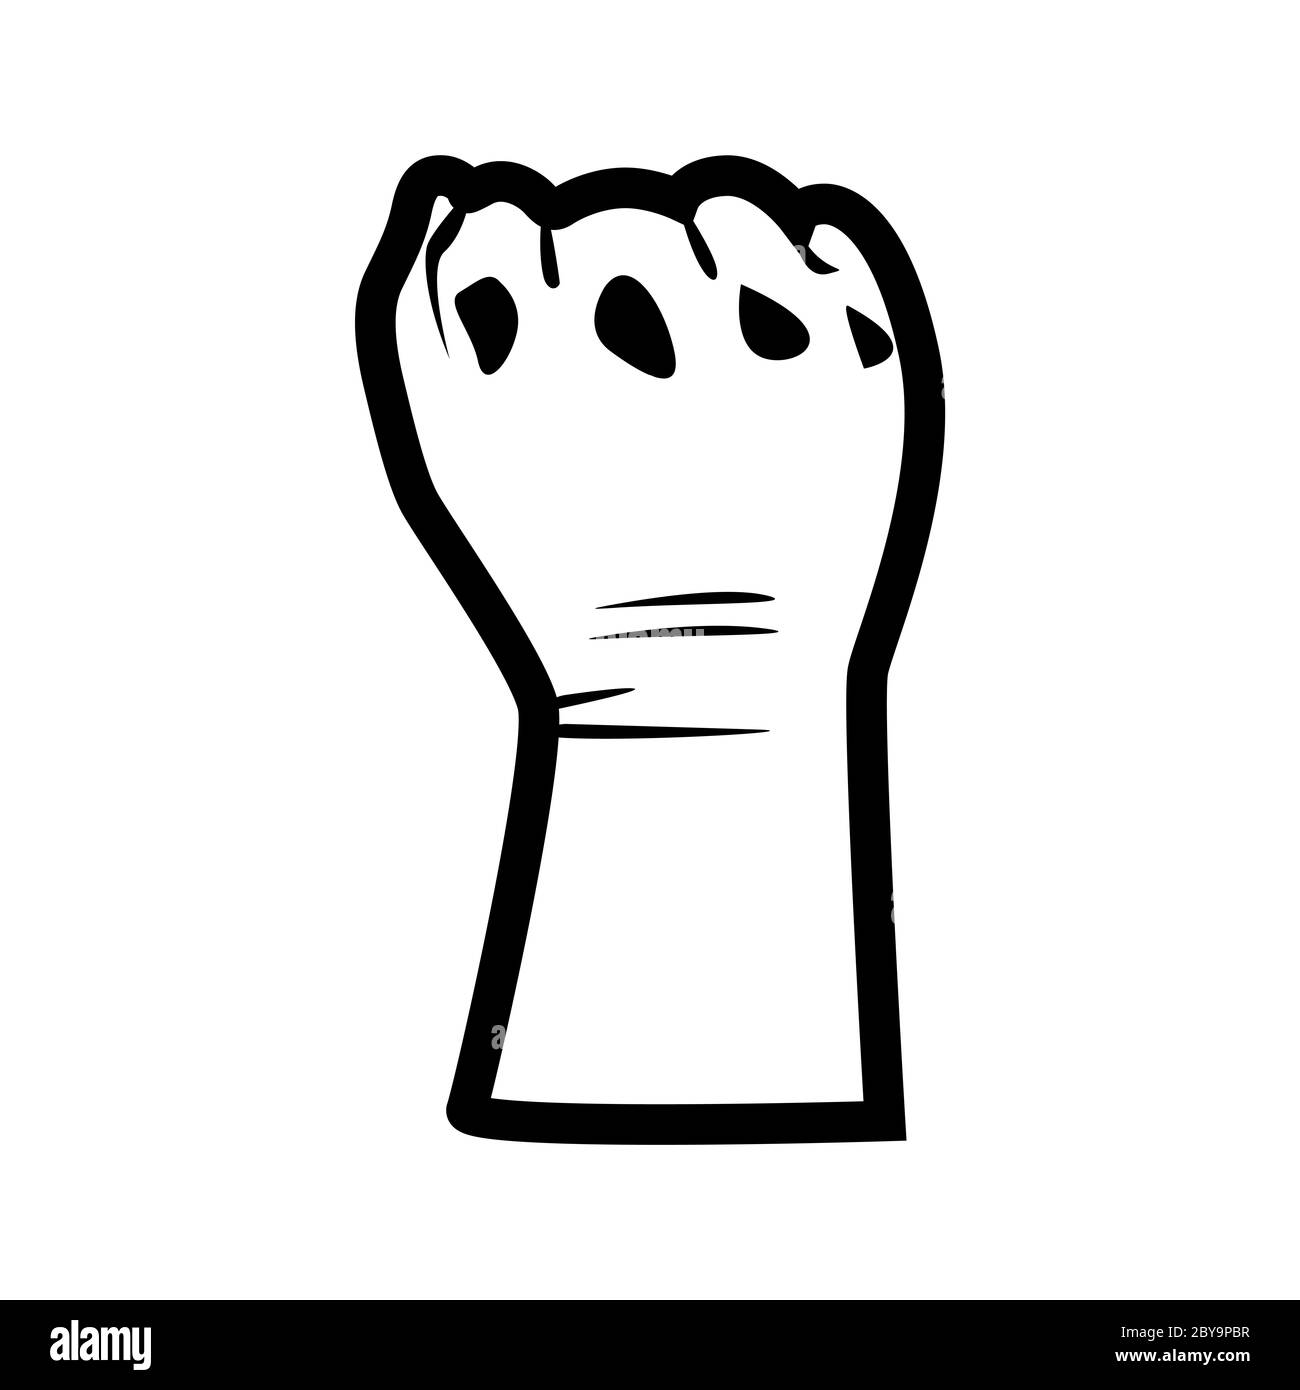 Le symbole de la main pour la vie noire est important pour protester aux États-Unis contre la violence envers les Noirs. Lutte pour les droits humains des Noirs en Amérique des États-Unis. Style plat Banque D'Images